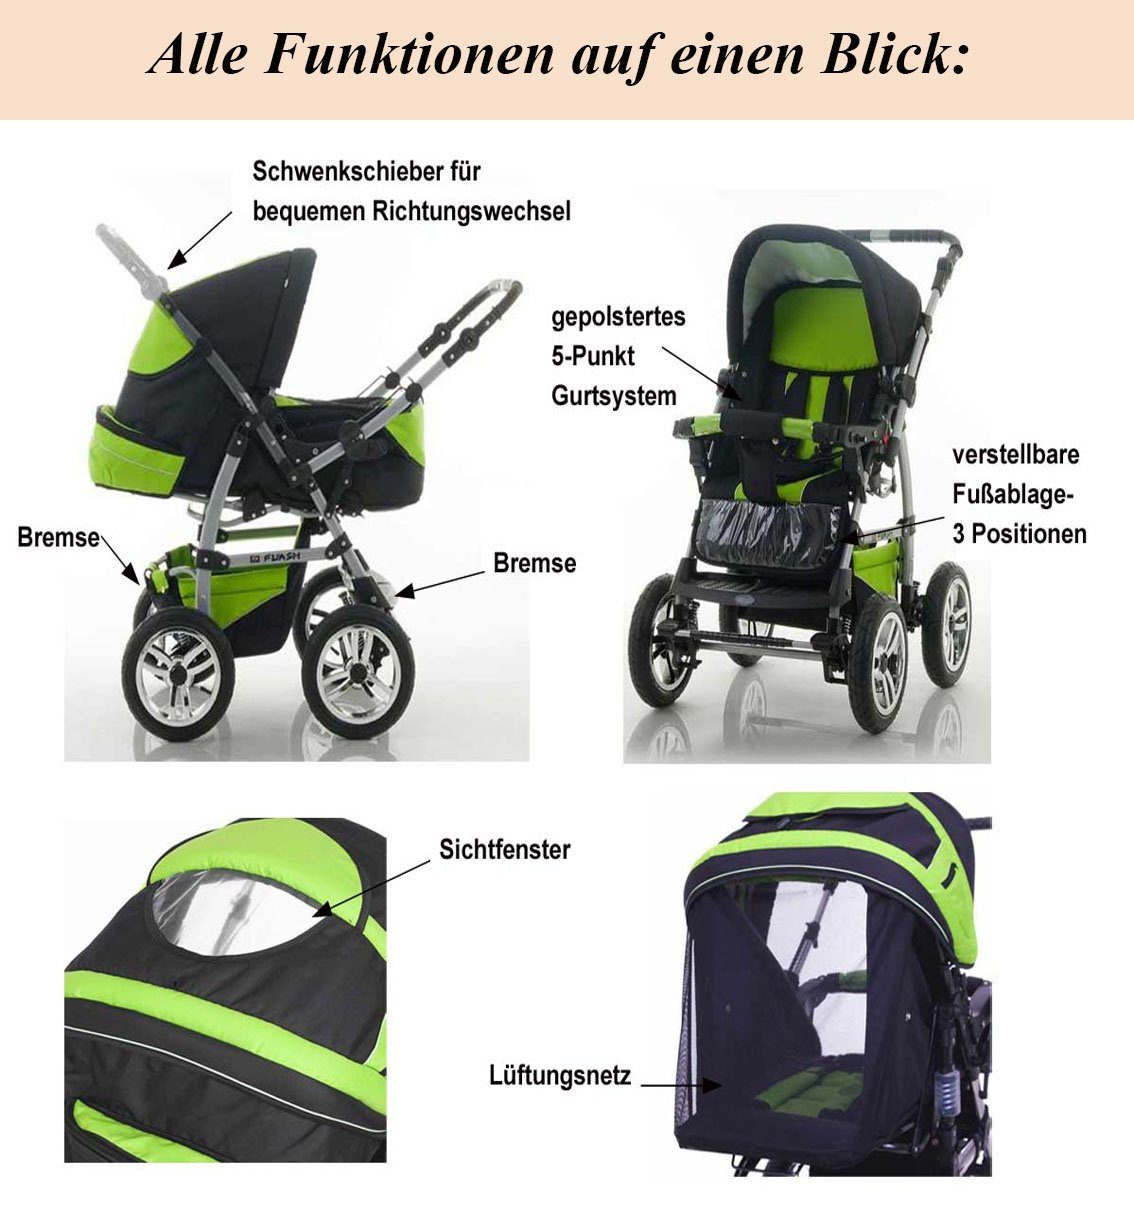 Teile Kombi-Kinderwagen Flash babies-on-wheels 18 - Farben 17 in Kinderwagen-Set 1 5 inkl. Braun-Creme in Autositz -